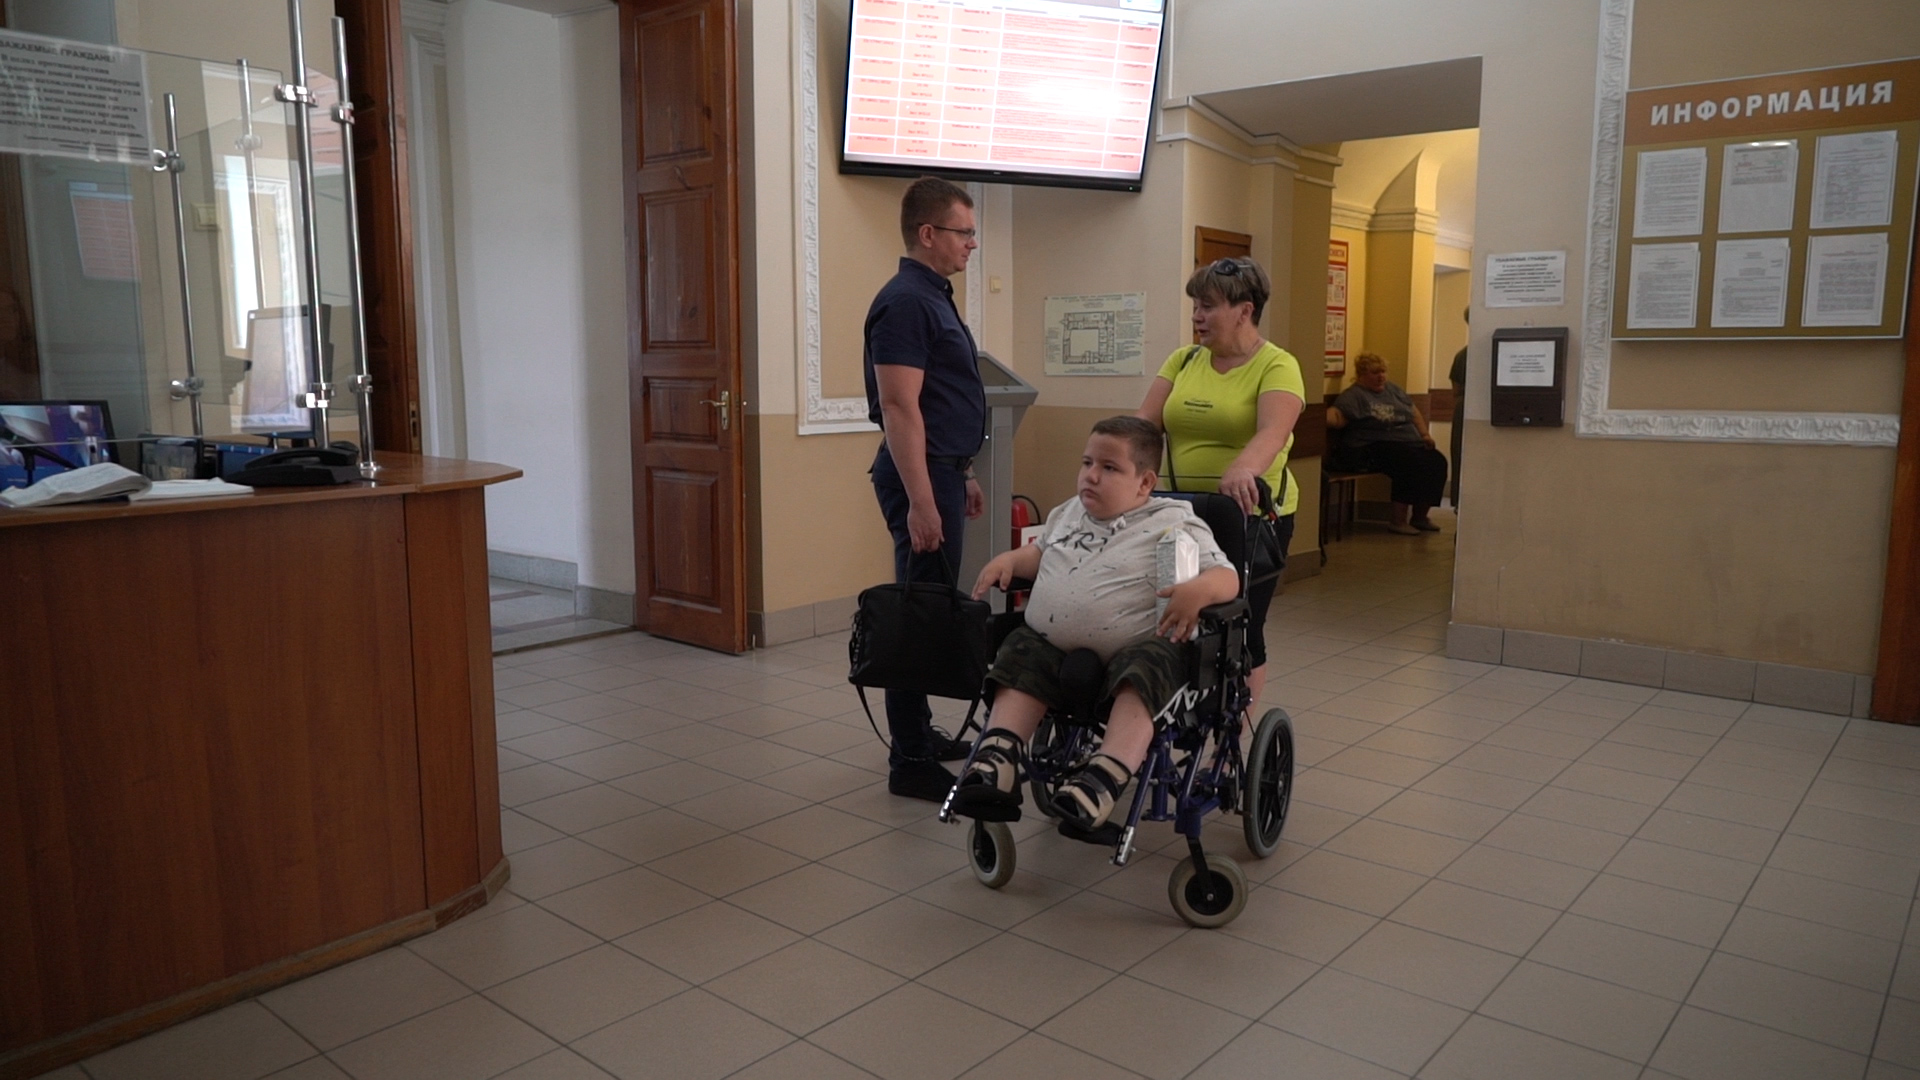 Мальчика из Плавска парализовало после операции: клиника должна выплатить ребенку 2,5 млн рублей